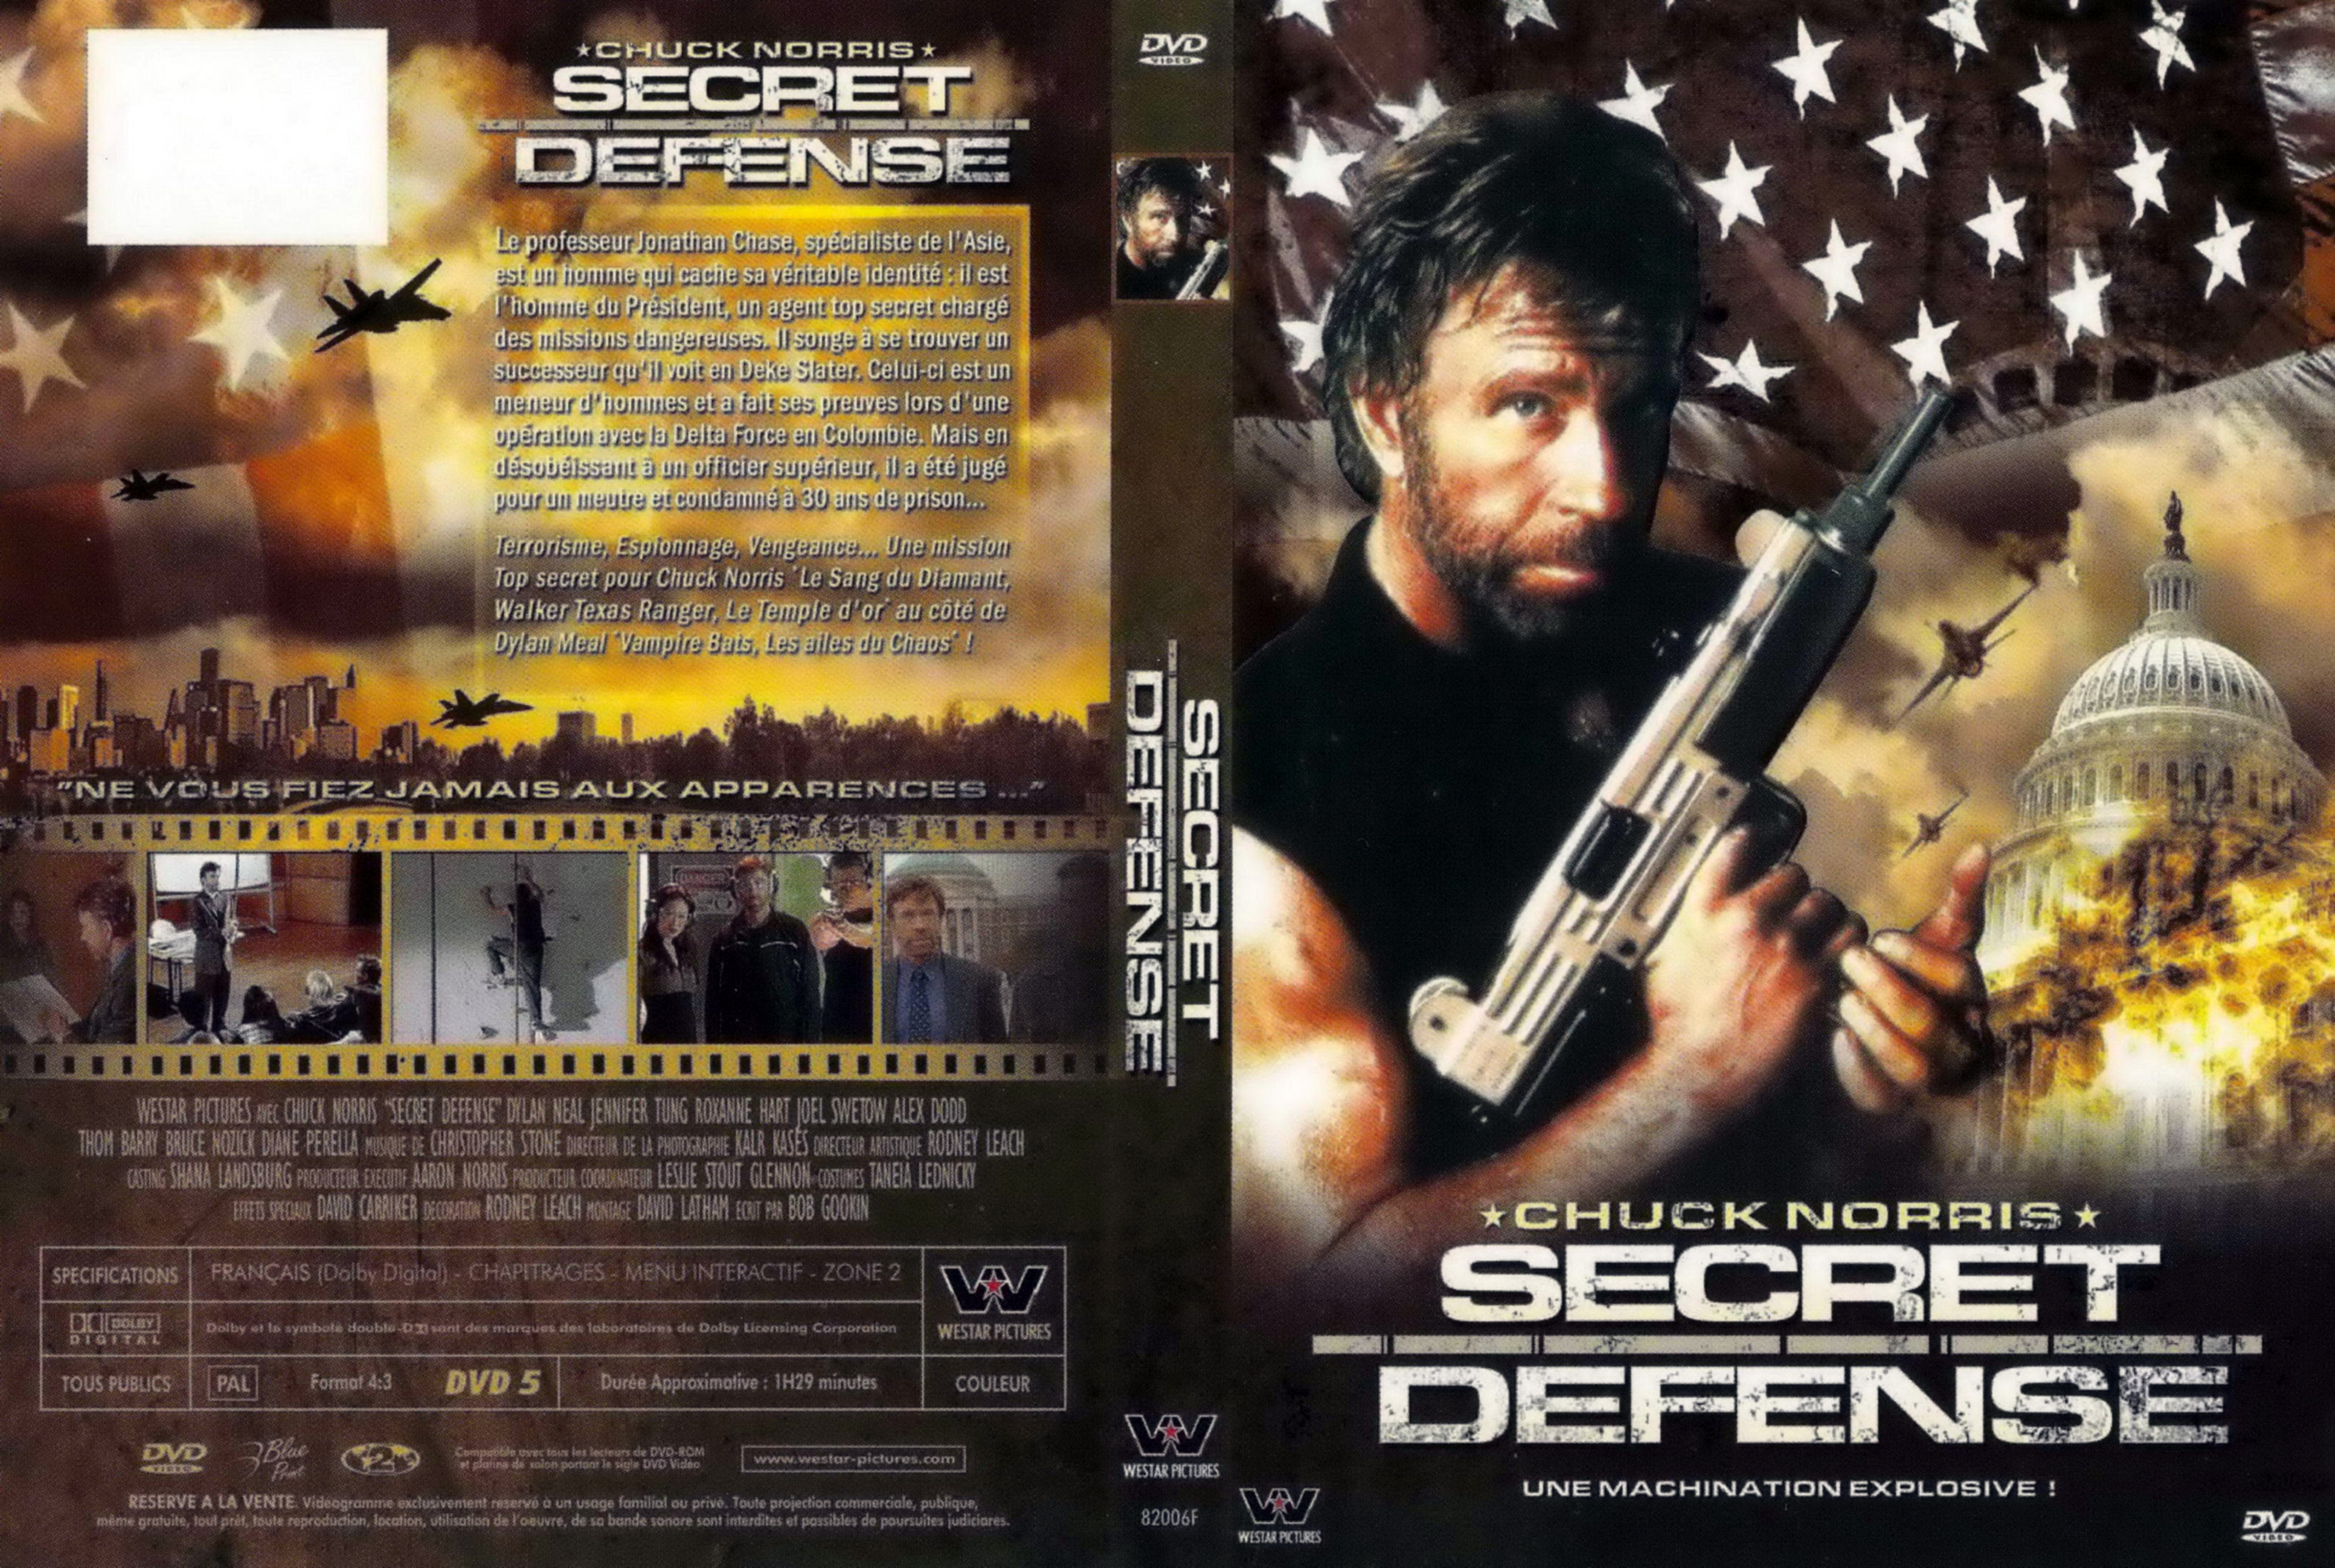 Jaquette DVD Secret defense (Chuck Norris)